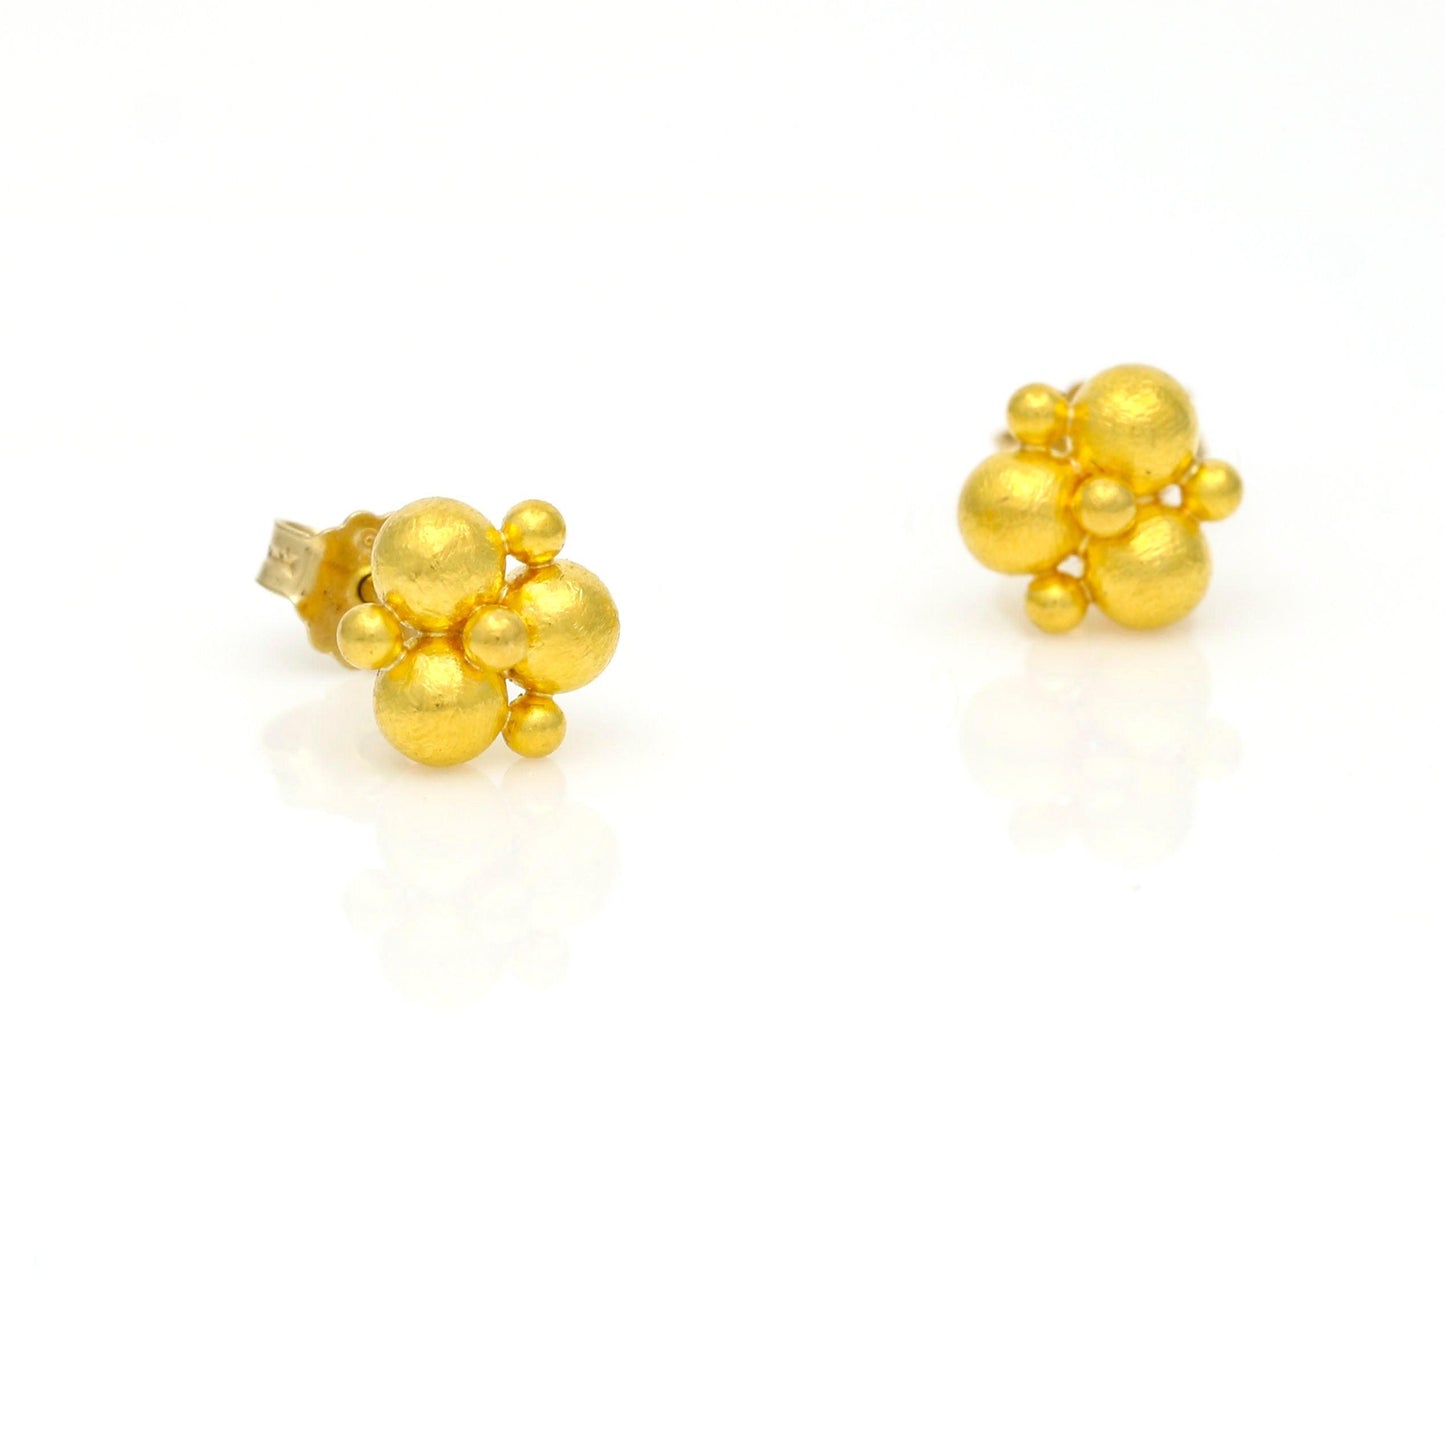 Cevherun 24k Gold Women's Stud Earrings - 31 Jewels Inc.